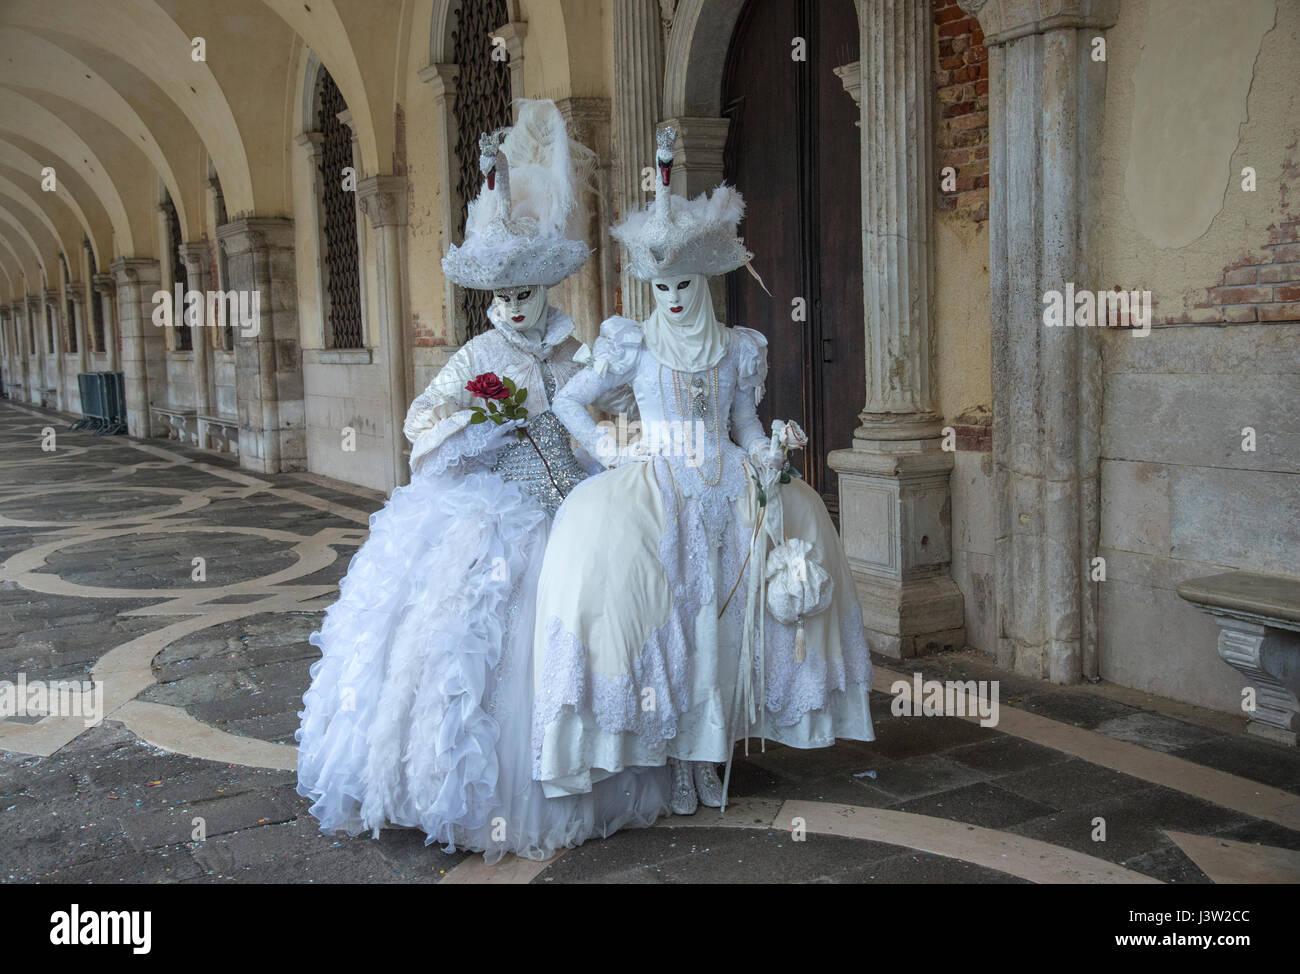 Immagine di due persone in costumi decorativi complementari lungo il Palazzo dei Dogi durante la festa del carnevale a Venezia. Foto Stock